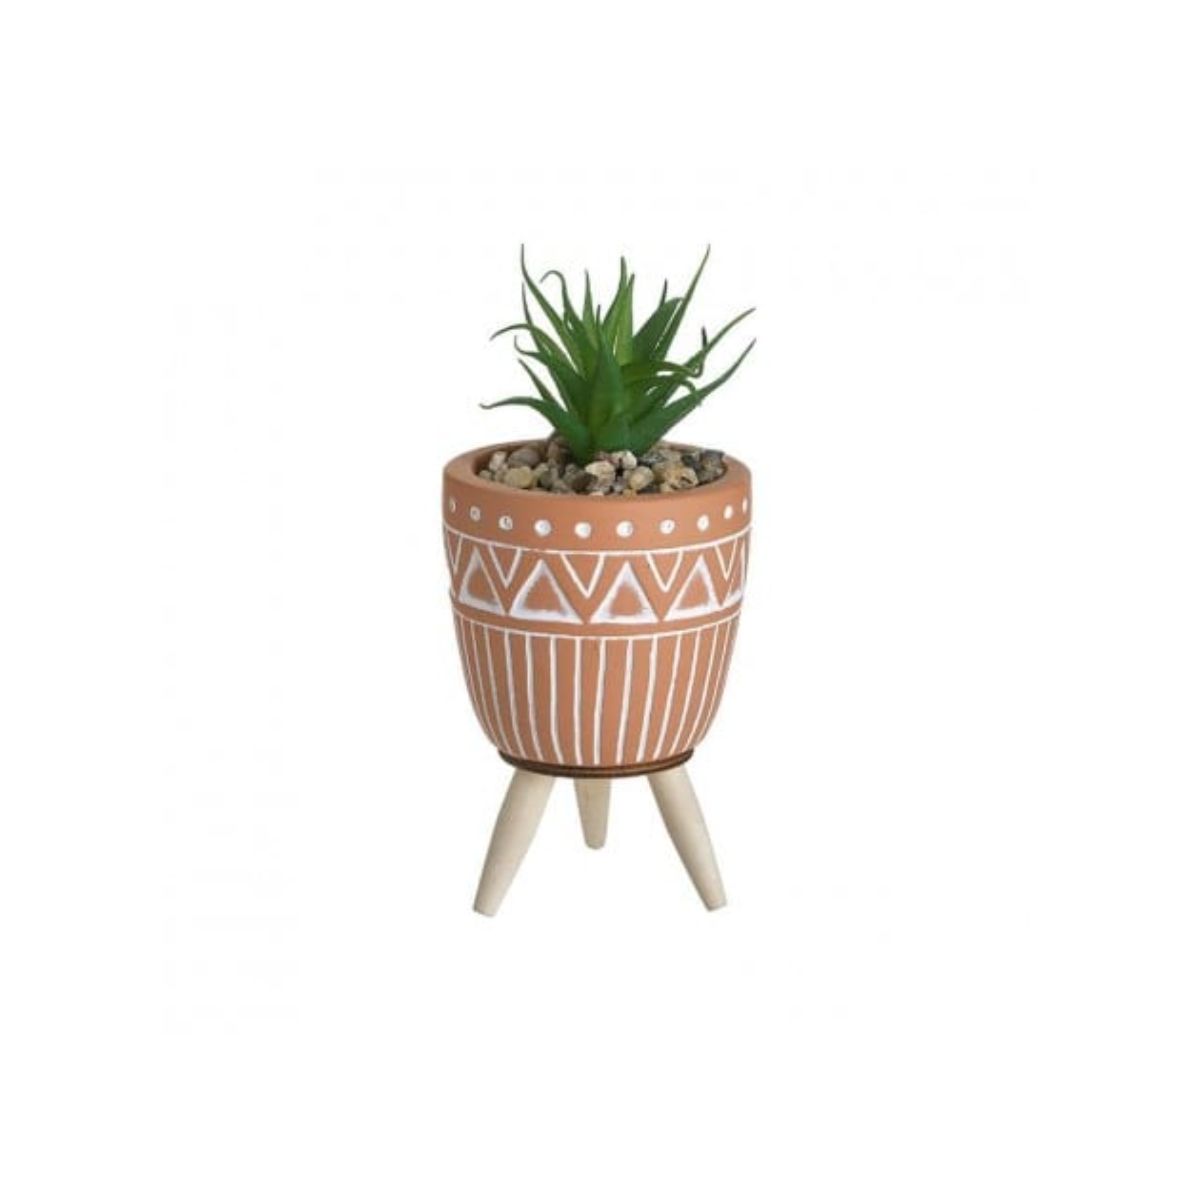 Ghivece - Ghiveci din ceramica cu planta, dimensiuni LWH 7.5cm x 7.5cm x 16.5 cm, hectarul.ro